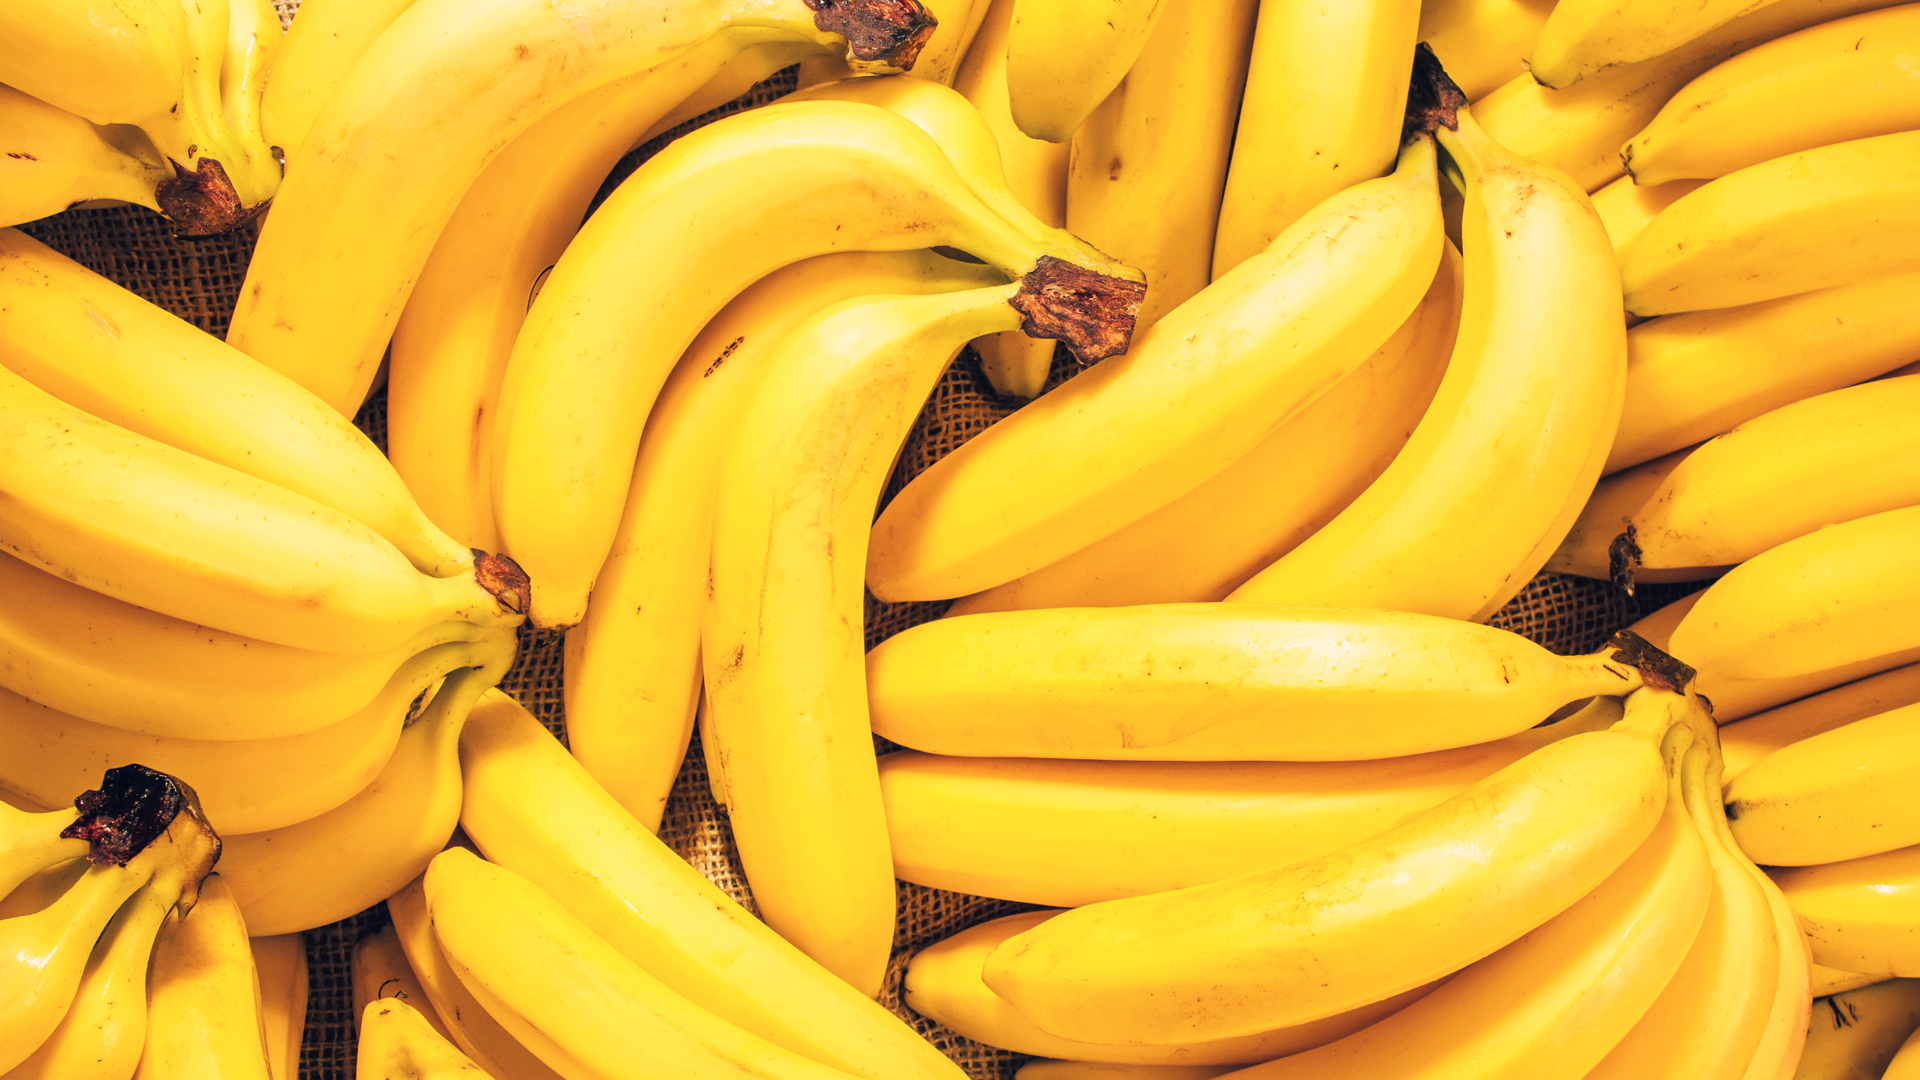 Una banana es ideal para el postre luego de la cena, ya que ayuda a conciliar el sueño